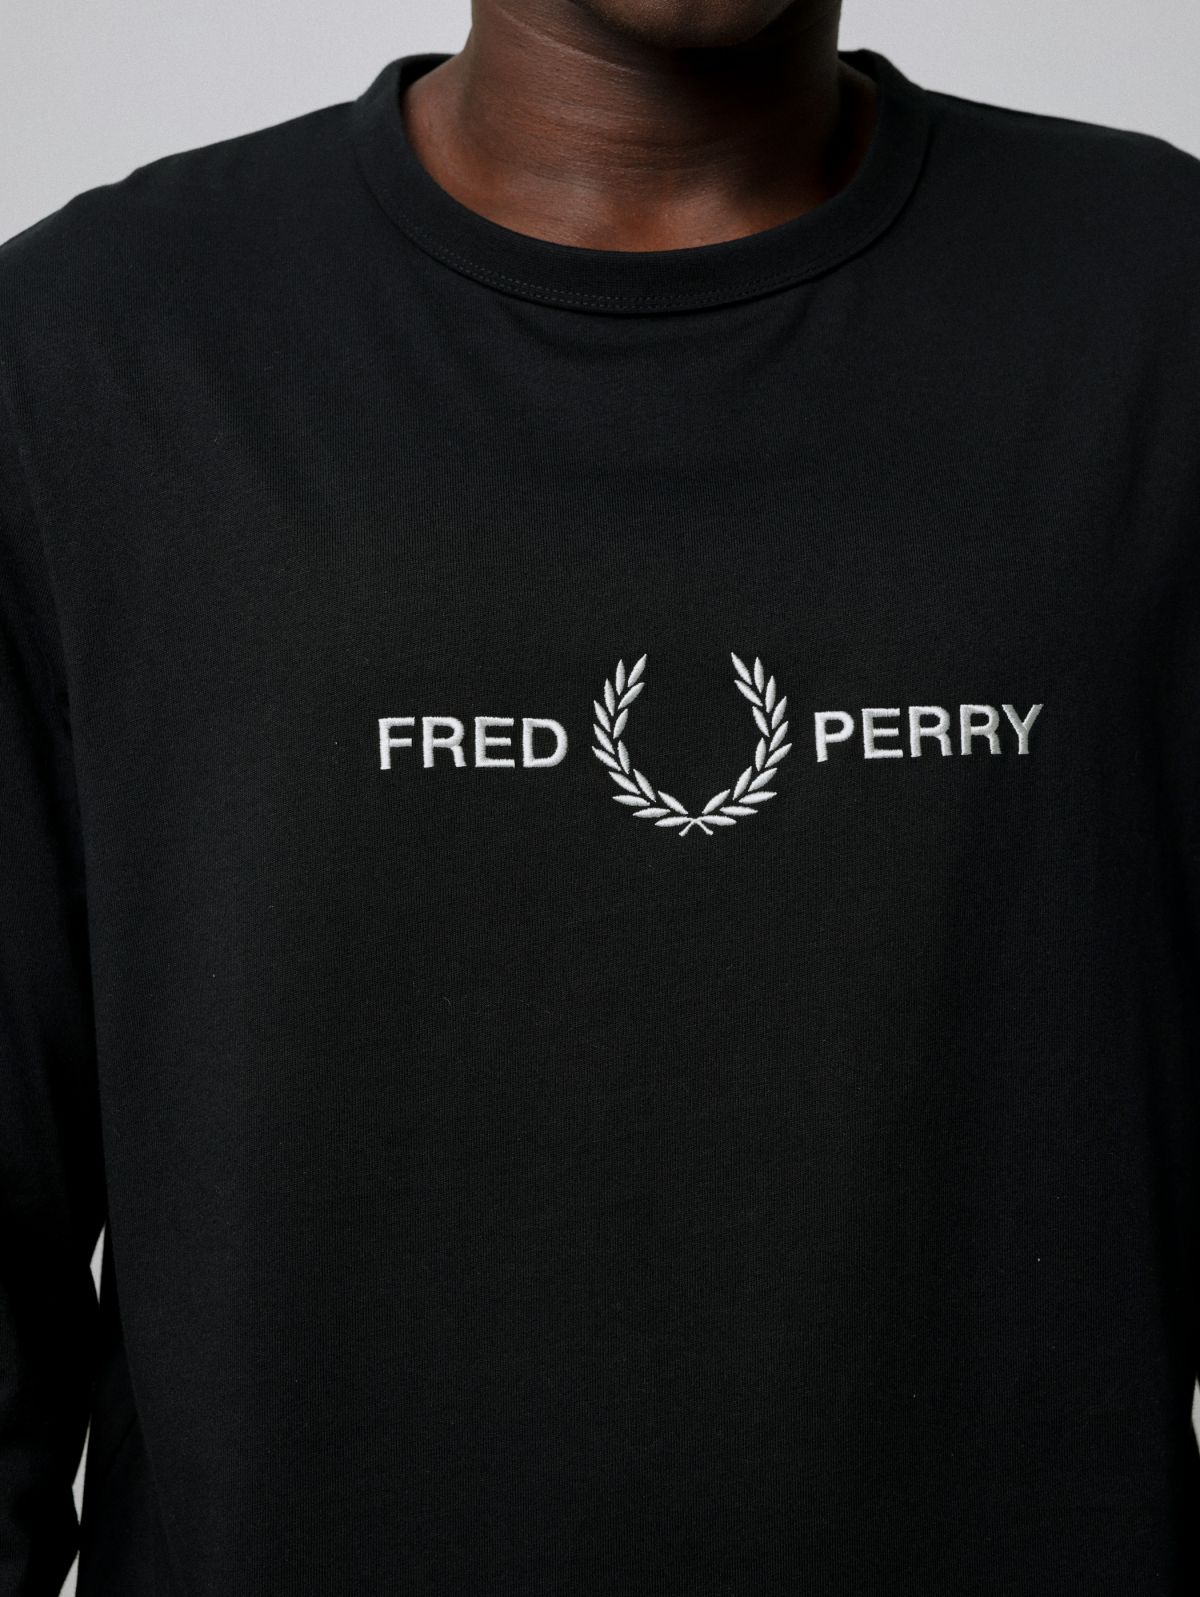  טי שירט עם לוגו של FRED PERRY